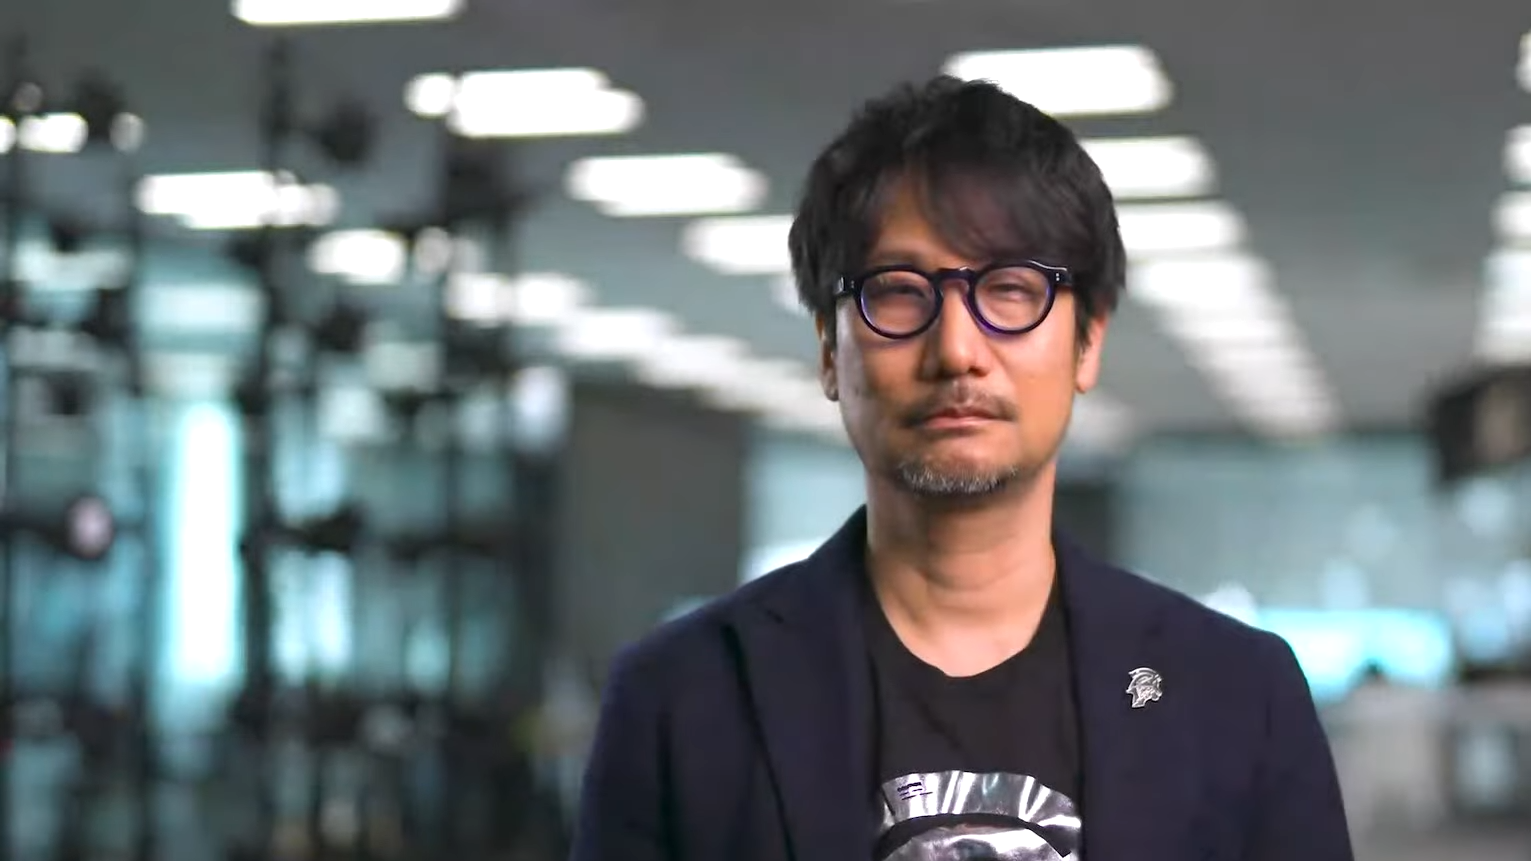 Bilder zu Kojima arbeitet nach Xbox-Deal weiterhin mit PlayStation zusammen